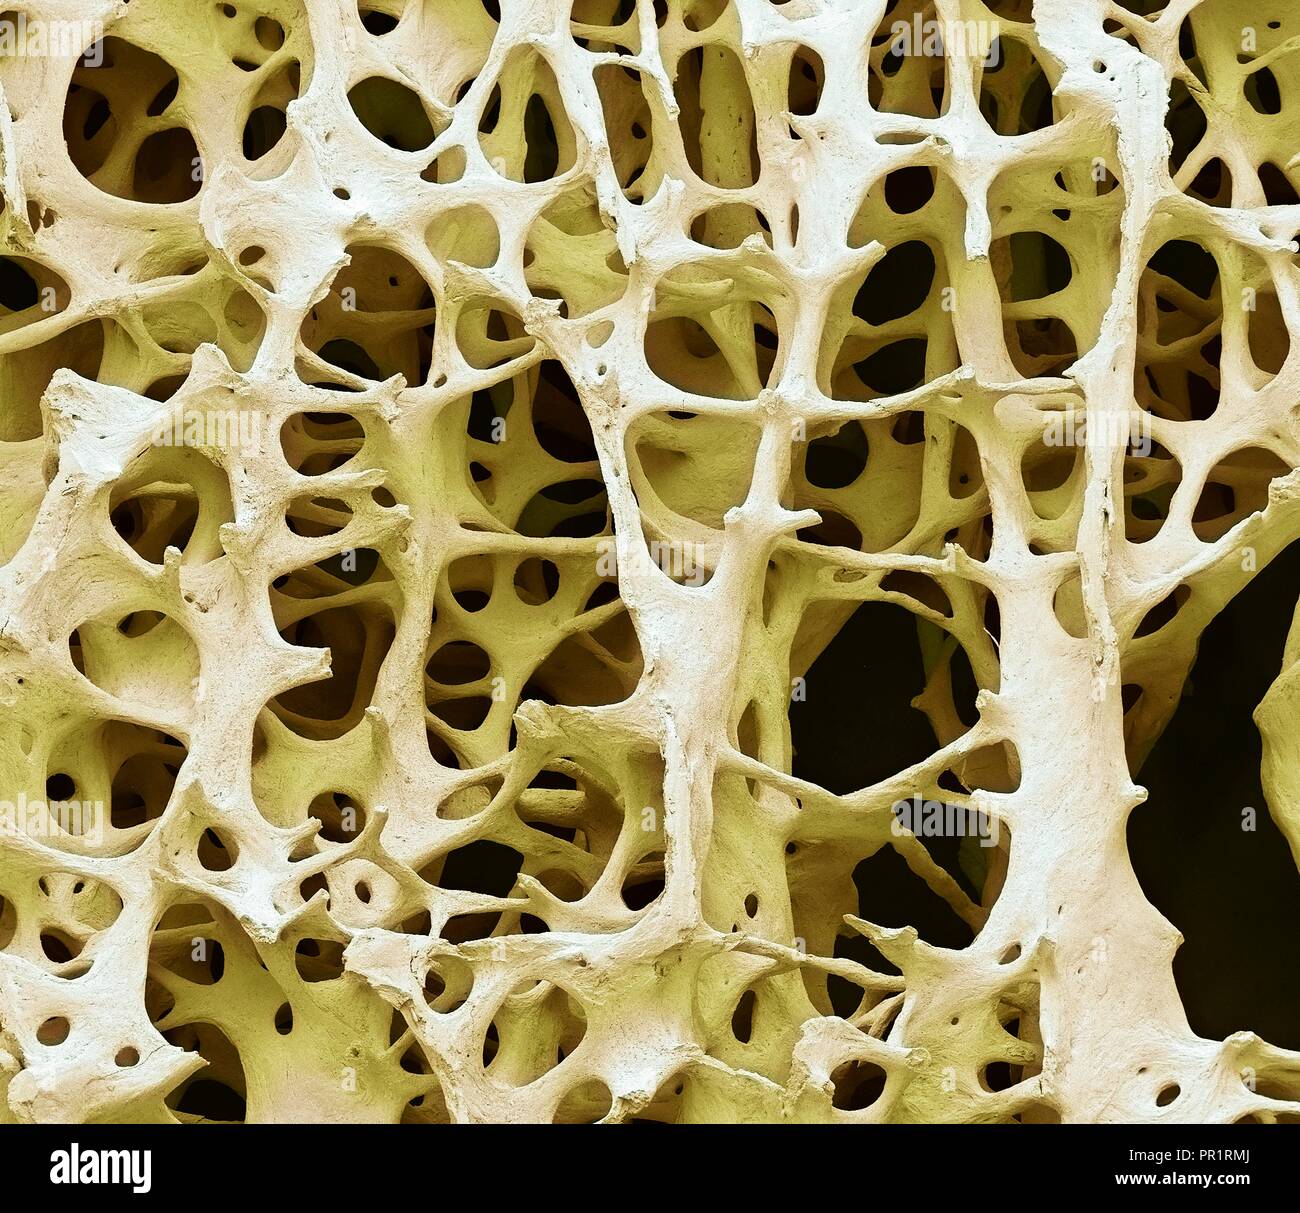 Il tessuto osseo. Color scanning electron microfotografia (SEM) di spugnoso umano (spugnosa ossea). Il tessuto osseo può essere sia (corticale compatta) spugnoso o. L'osso corticale di solito rende l'esterno dell'osso, mentre l'osso spugnoso si trova all'interno. Osso spongioso è caratterizzato da una disposizione a nido d'ape, comprendente una rete di trabecole (a forma di asta di tessuto). Queste strutture forniscono sostegno e forza per l'osso. Gli spazi all'interno di questo tessuto contengono midollo osseo (non visibile), un sangue di sostanza di formazione. Ingrandimento: x13 quando stampata 10cm di larghezza. Foto Stock